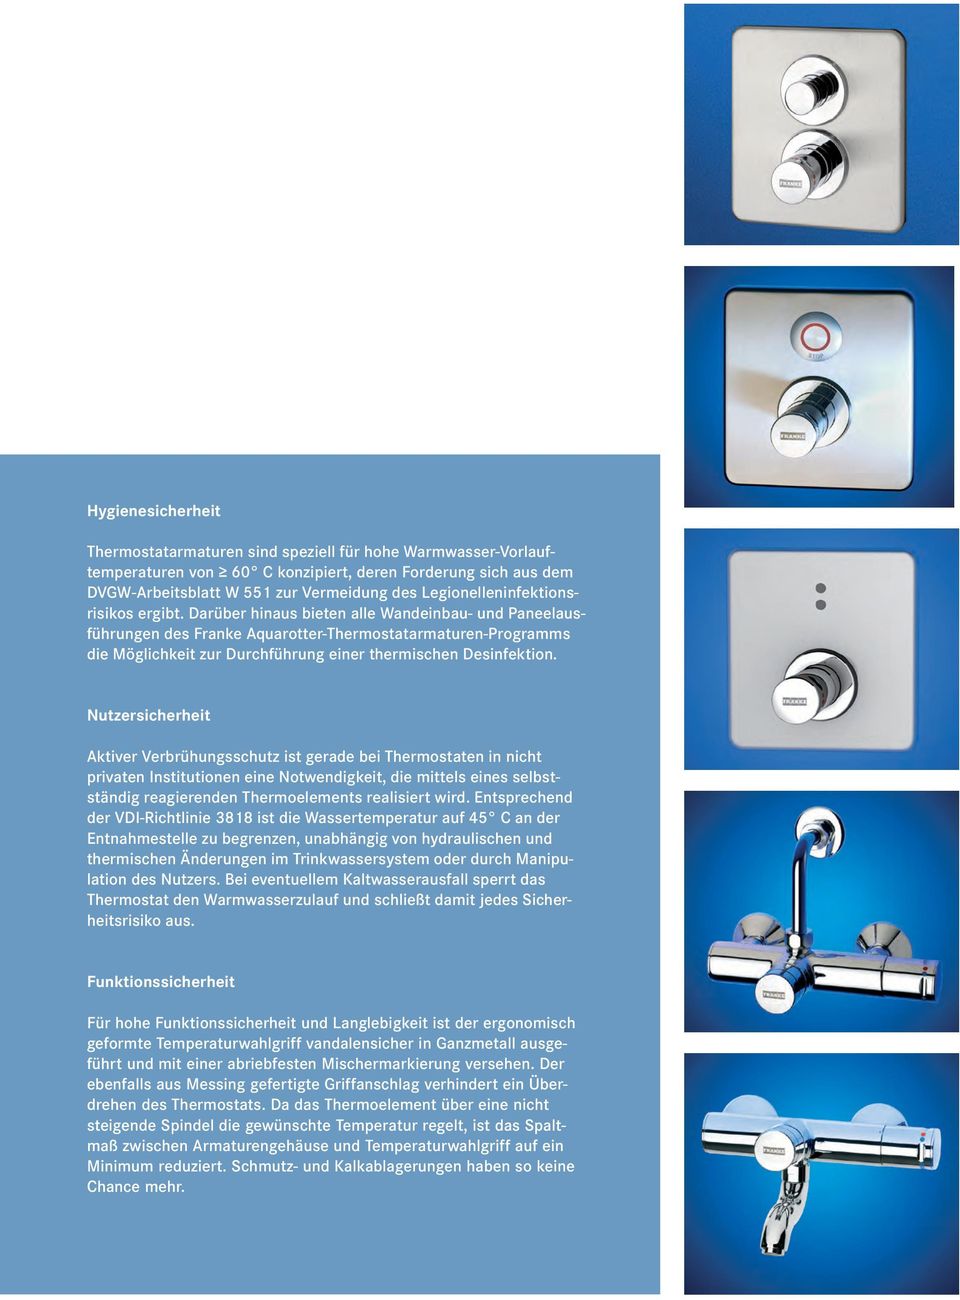 Darüber hinaus bieten alle Wandeinbau- und Paneelausführungen des Franke Aquarotter-Thermostat armaturen-programms die Möglichkeit zur Durchführung einer thermischen Desinfektion.